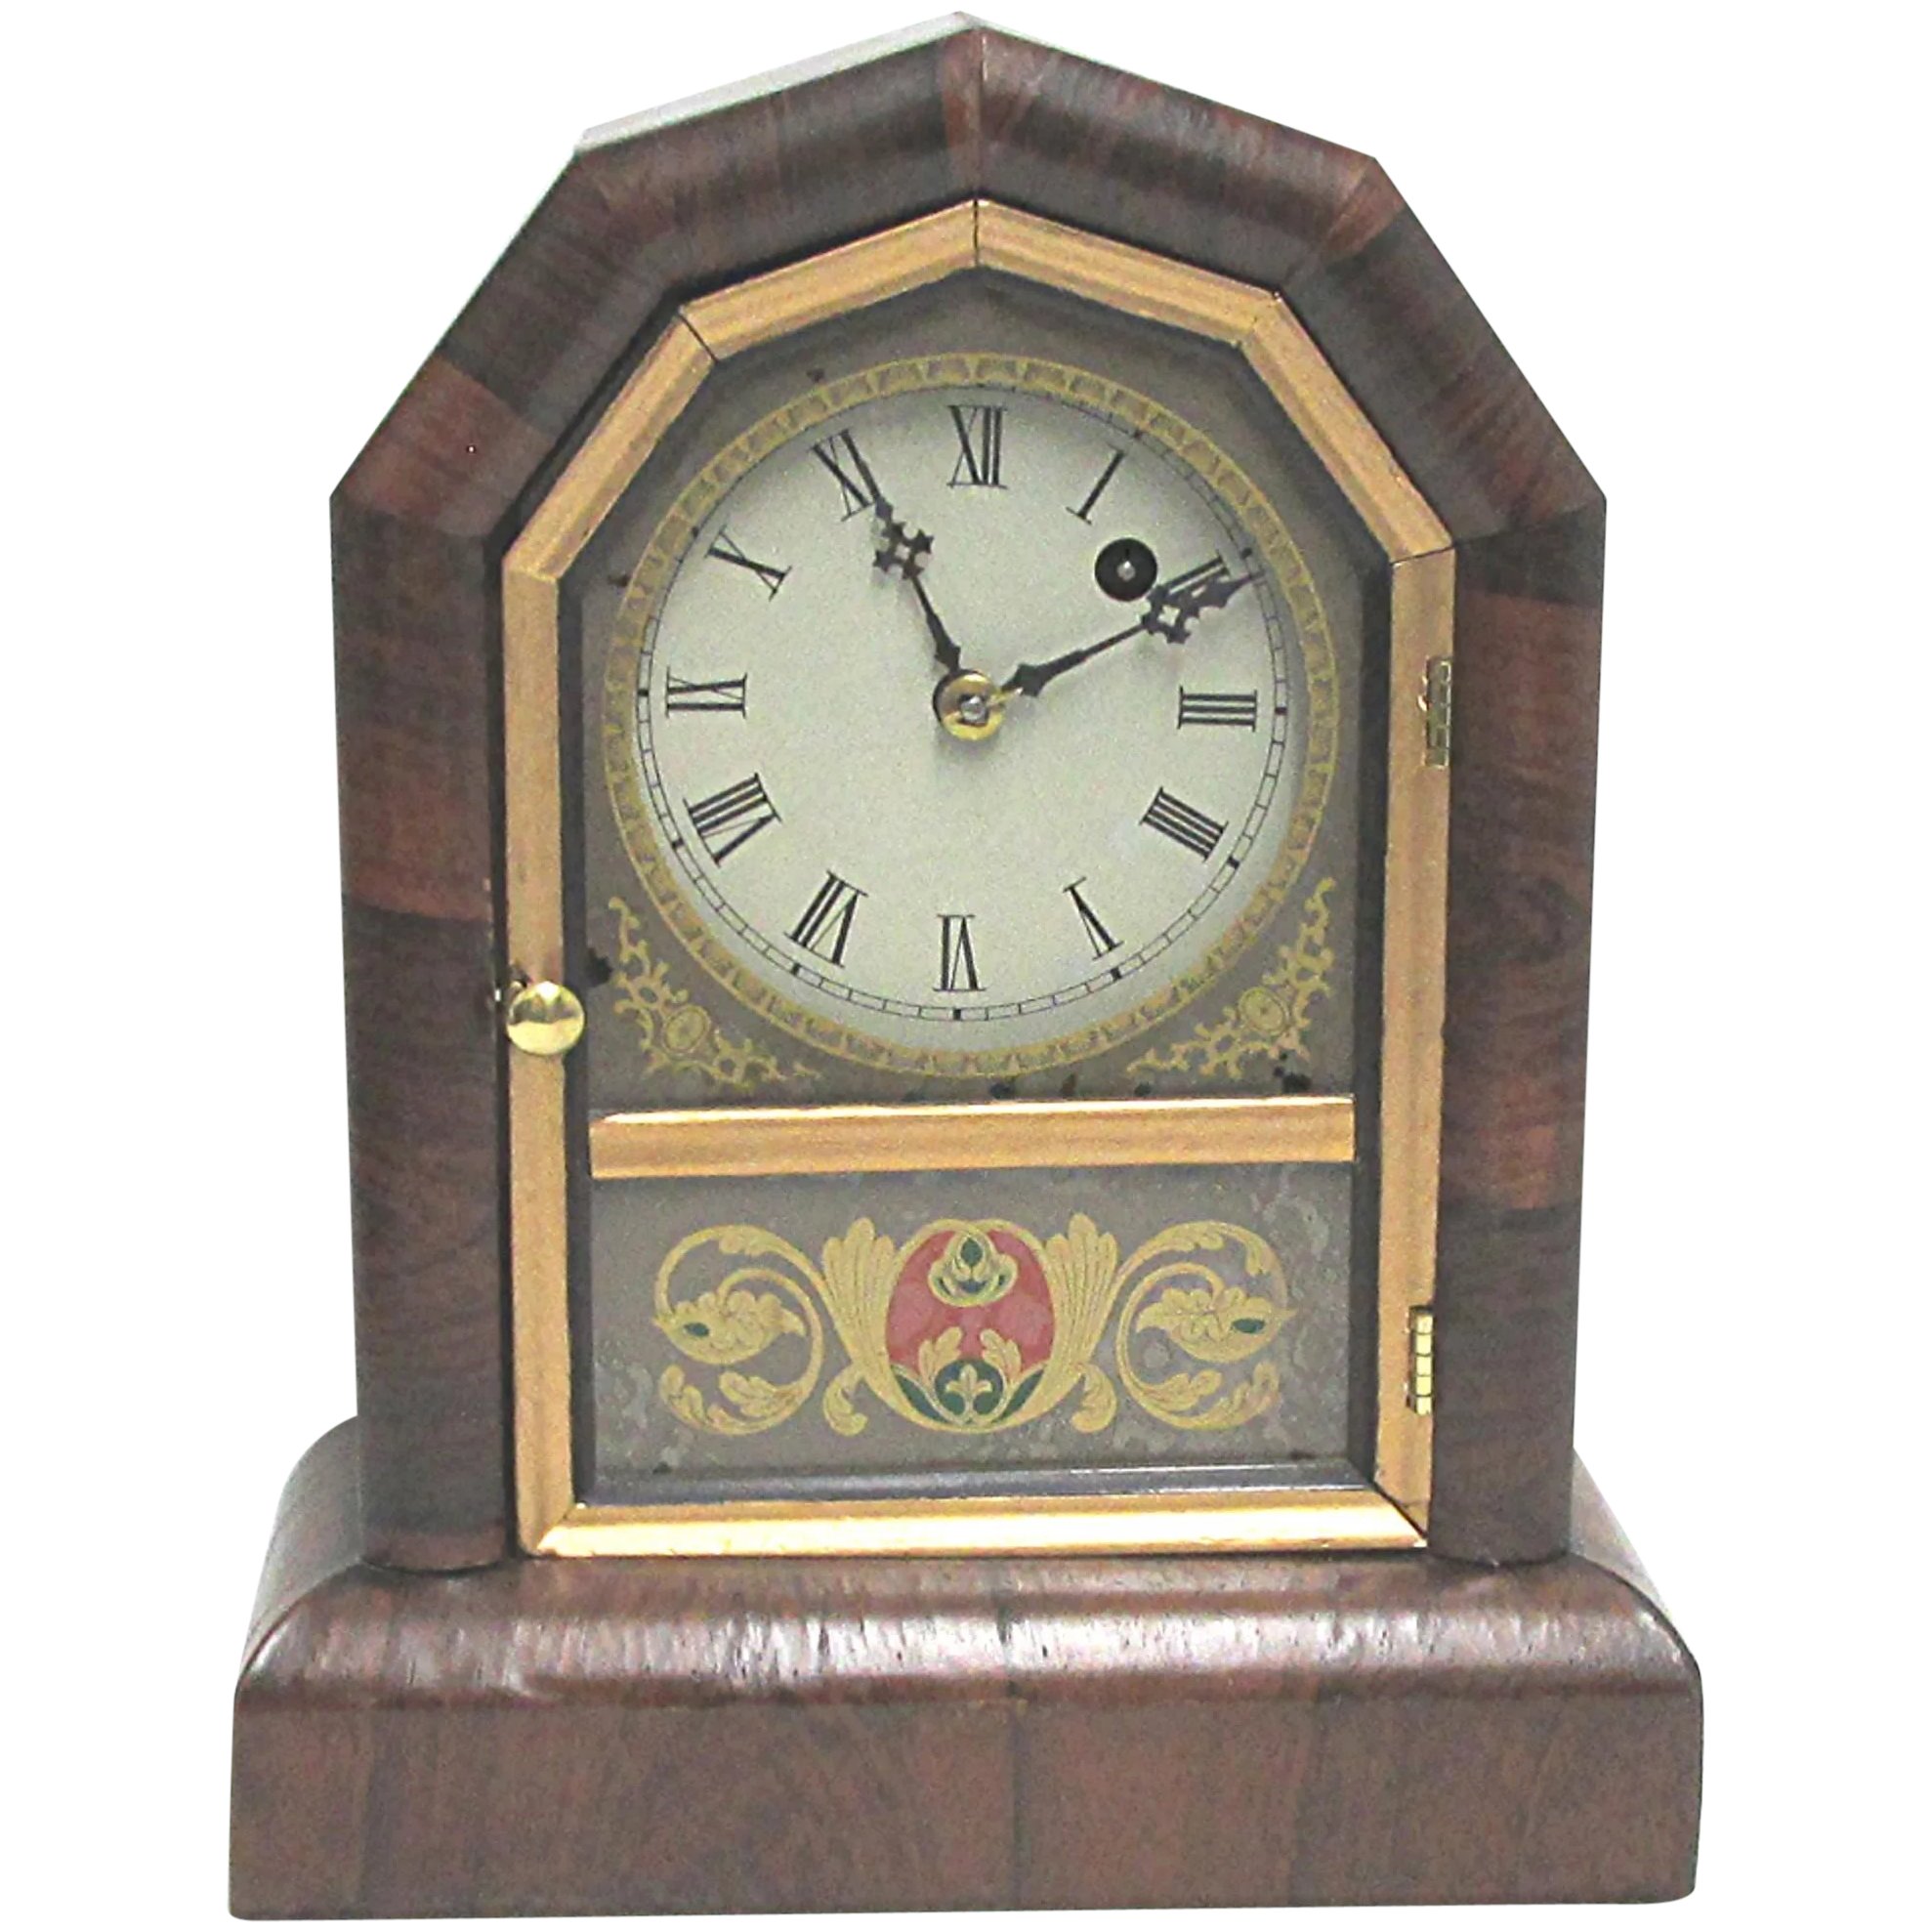 gilbert mantle clock movement